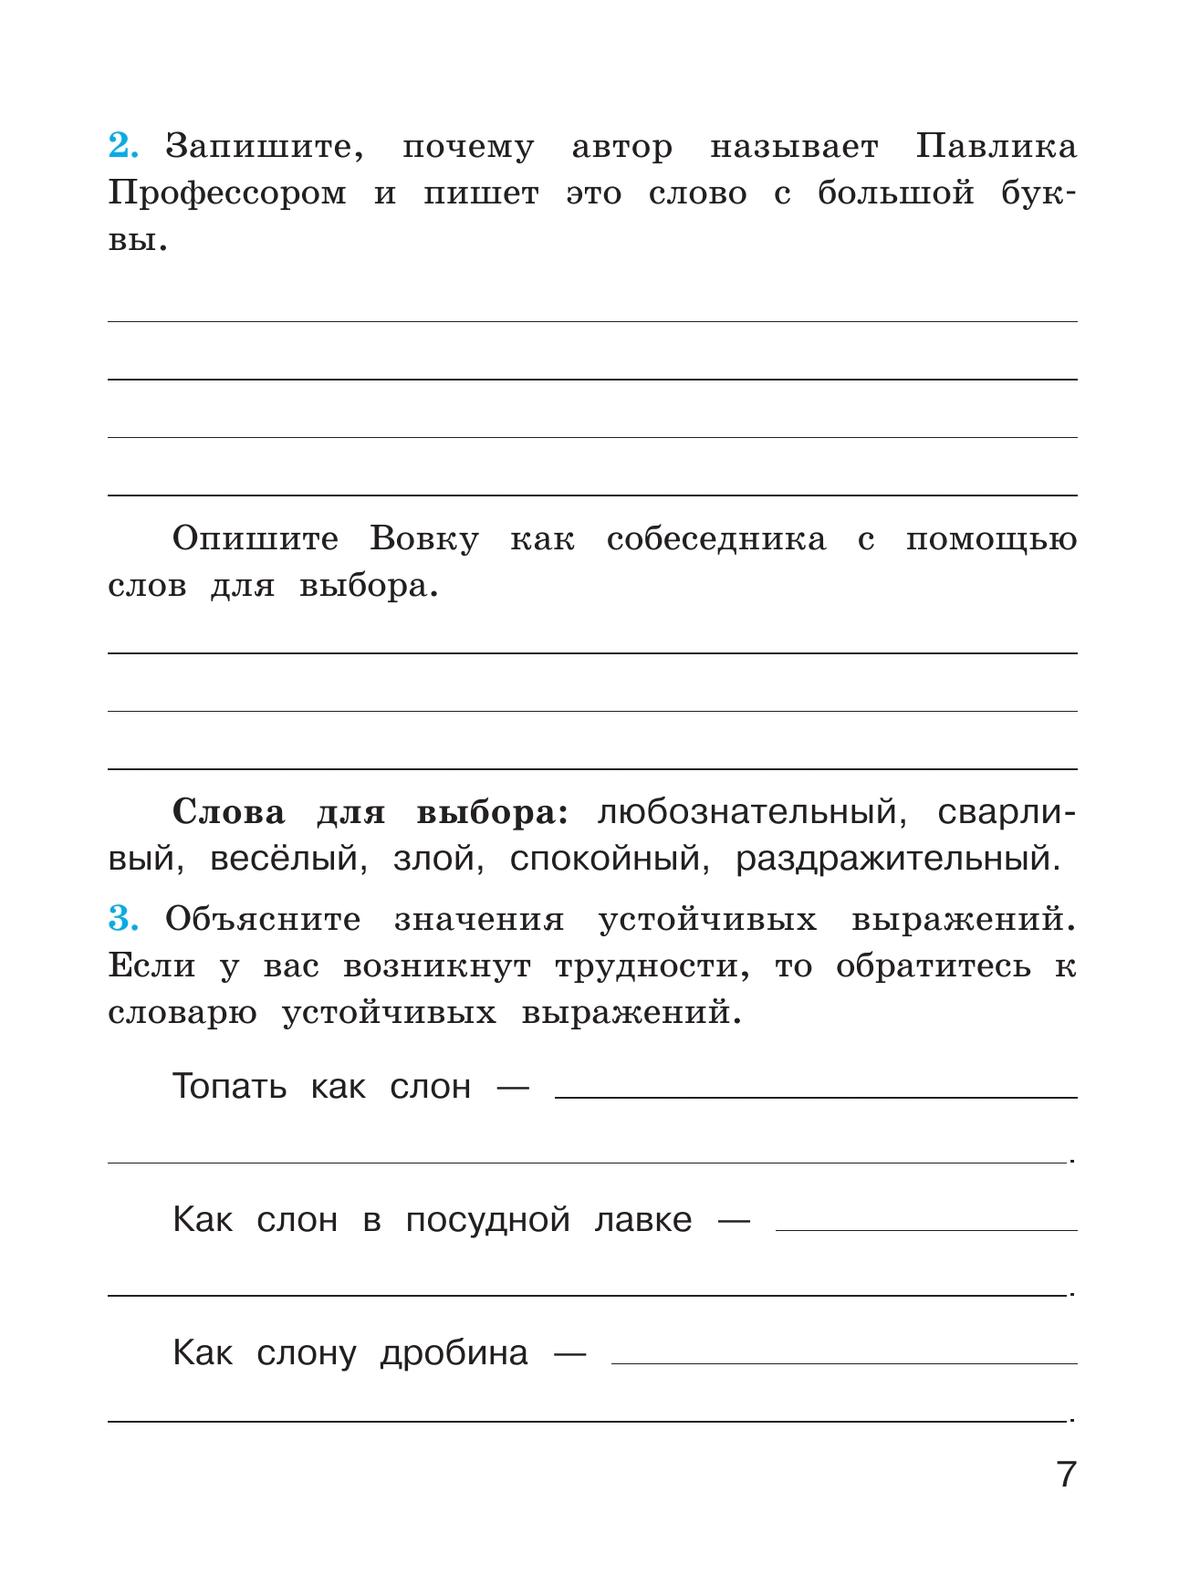 Русский язык. Проверочные работы. 4 класс 9